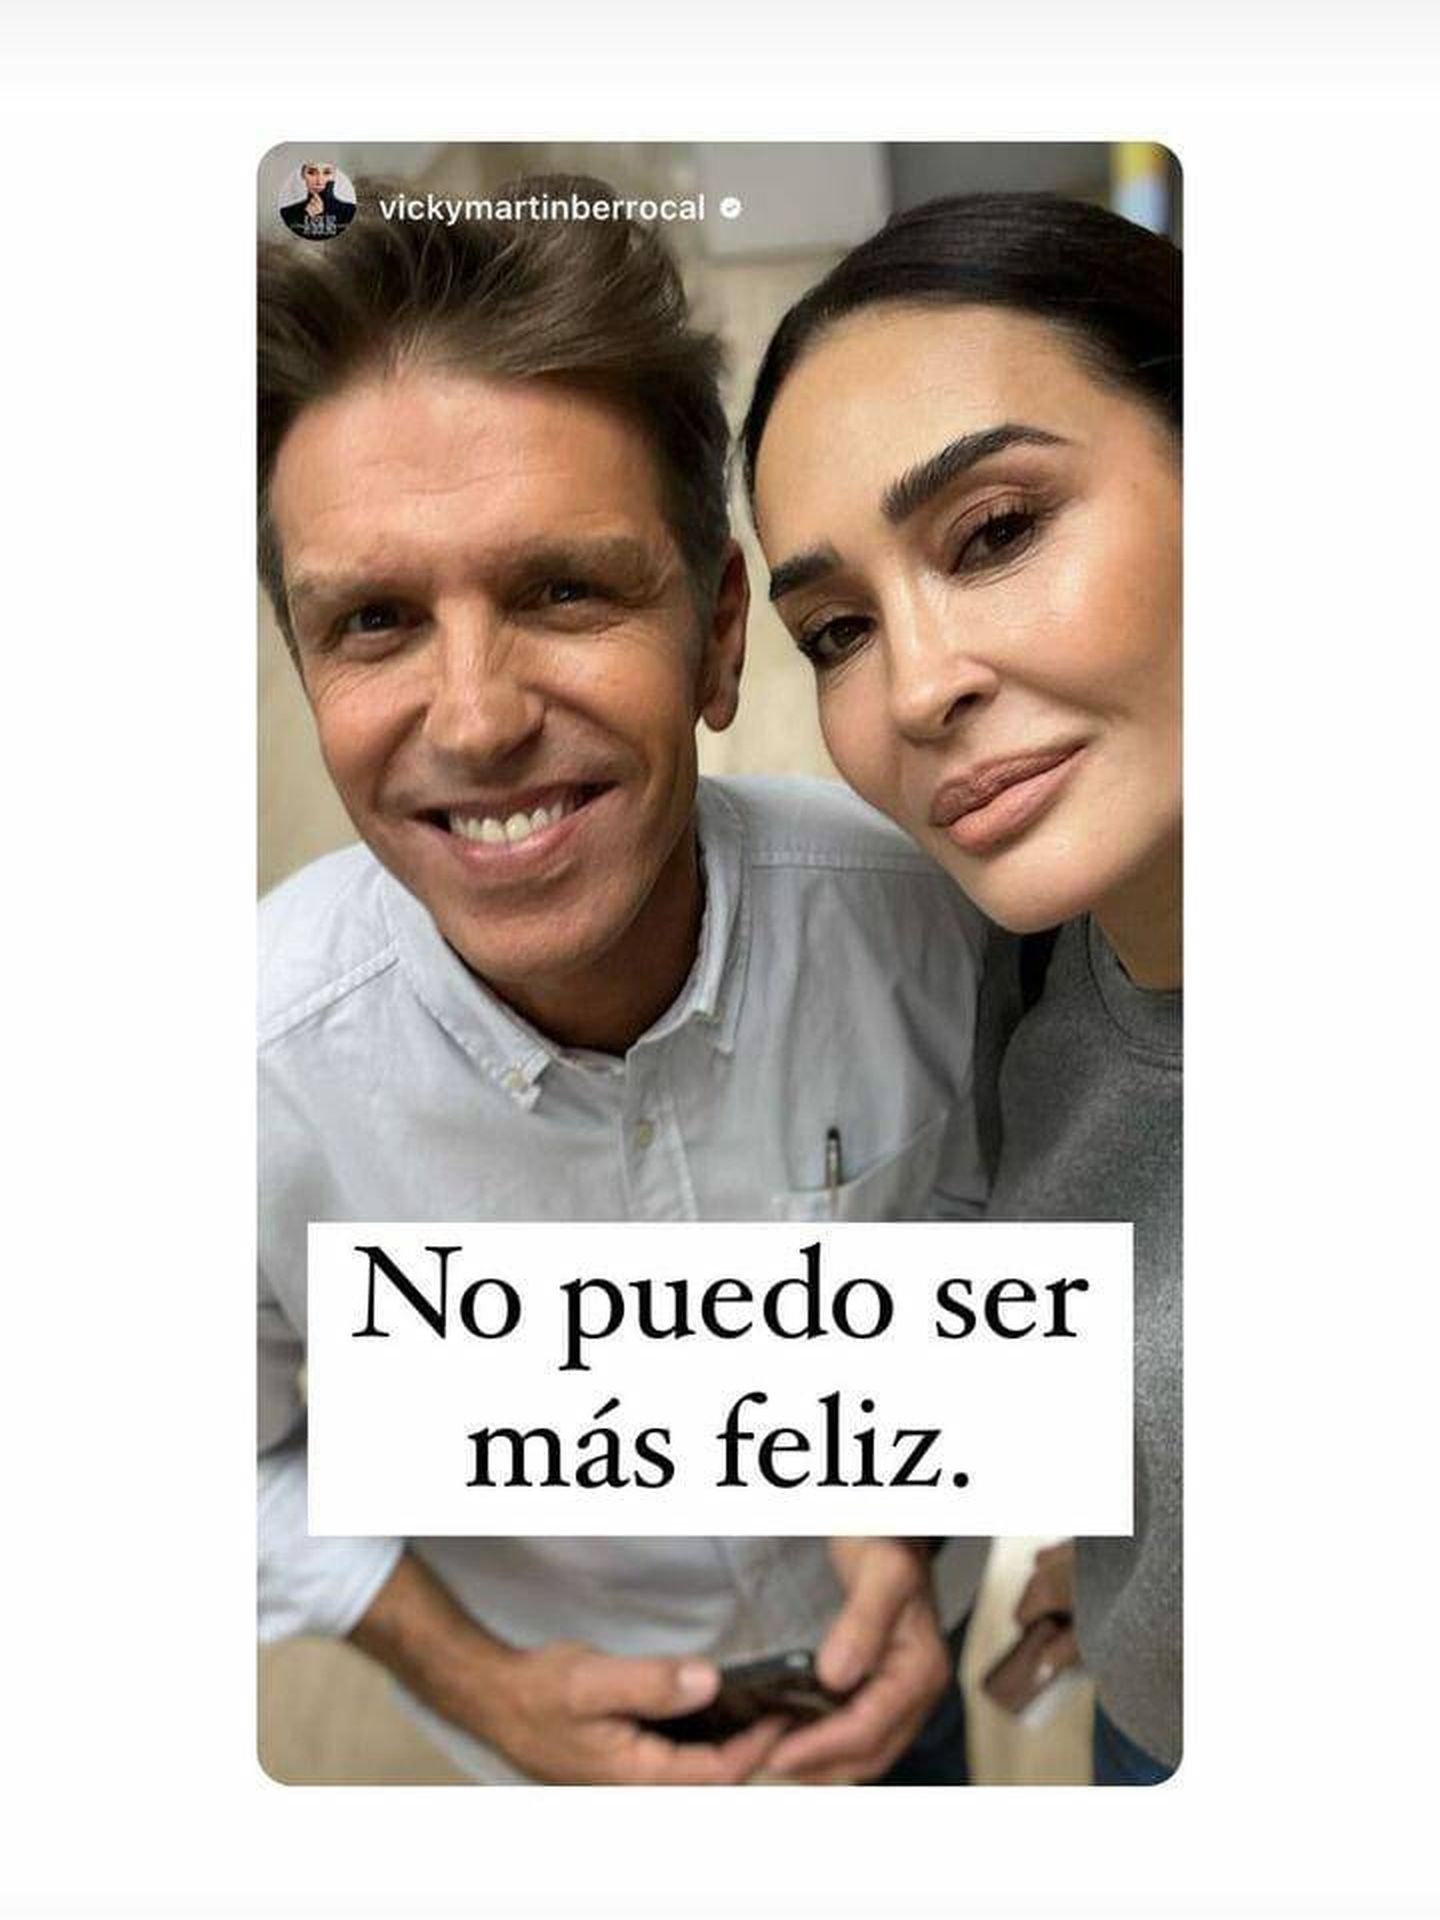 Alba Díaz escribe sobre la foto de sus padres juntos: 'No puedo ser más feliz'.(Instagram/@vickymartinberrocal)